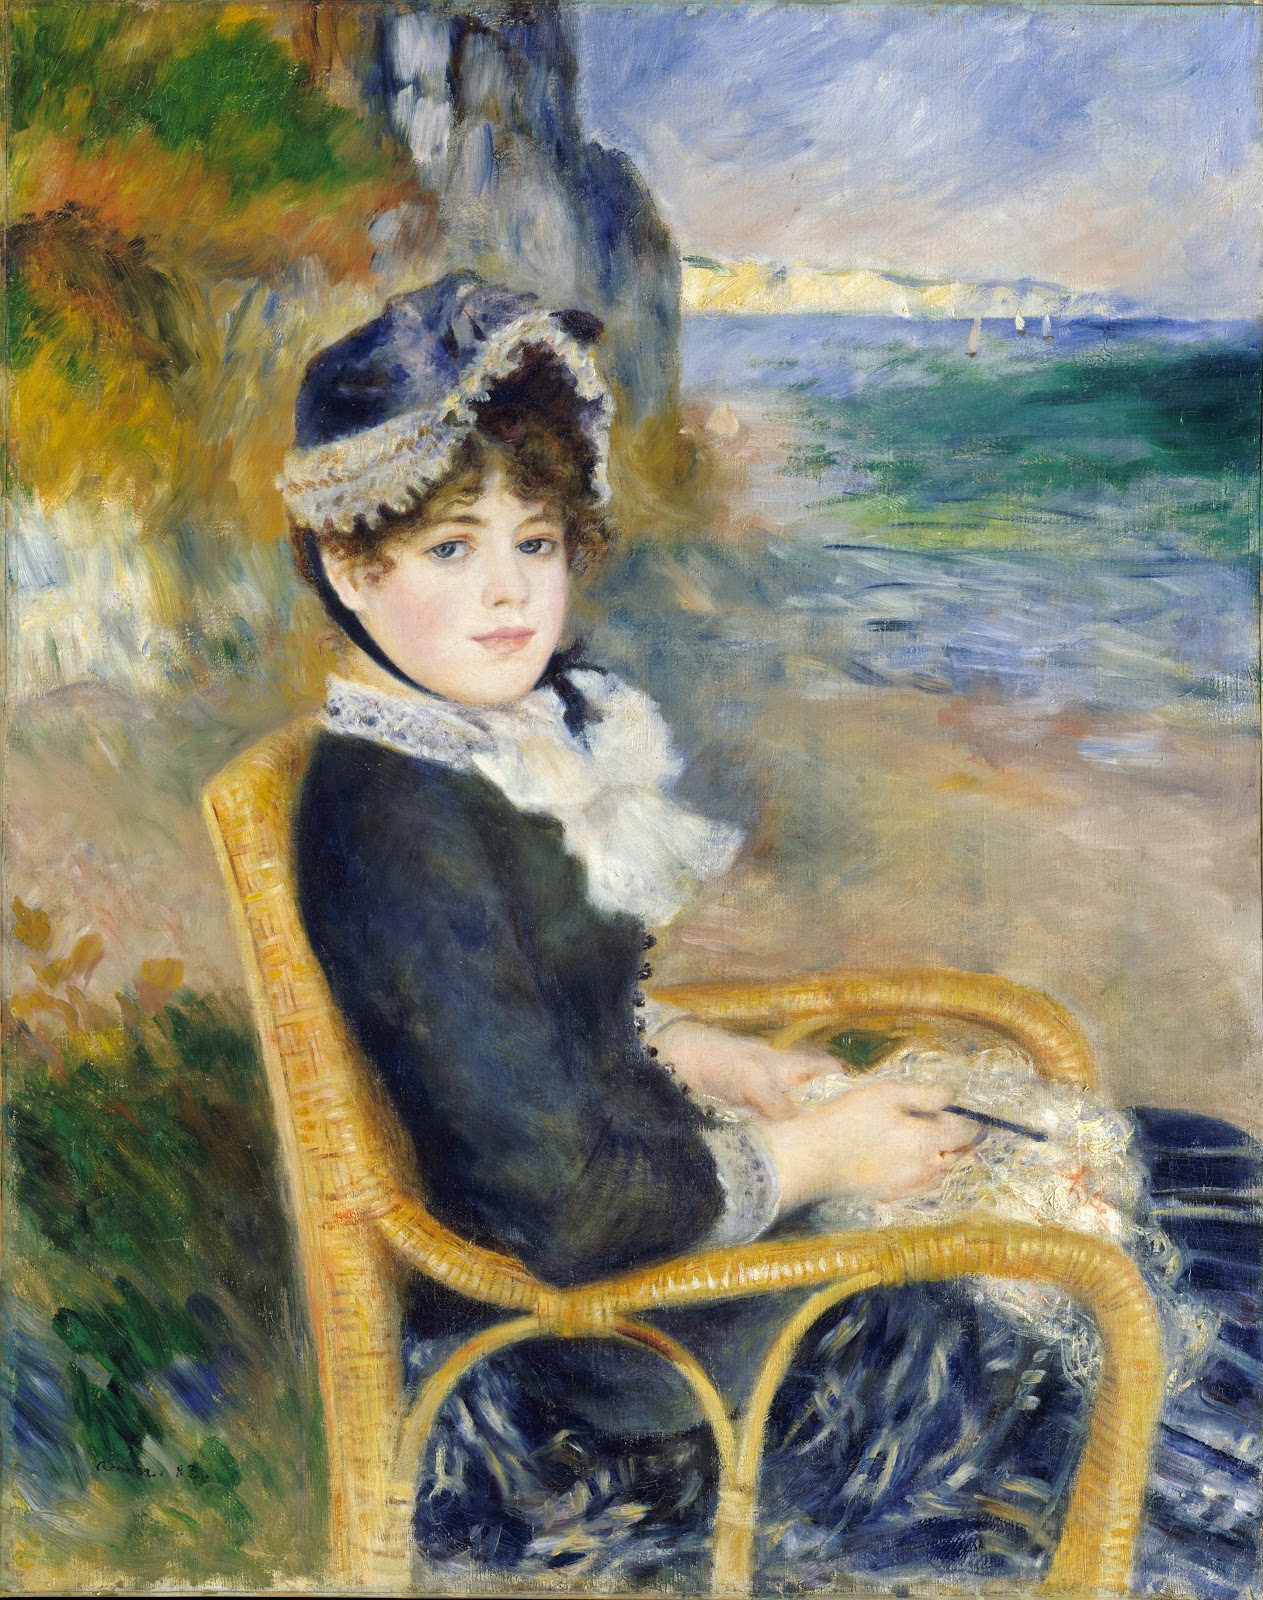 Pierre+Auguste+Renoir-1841-1-19 (963).jpg